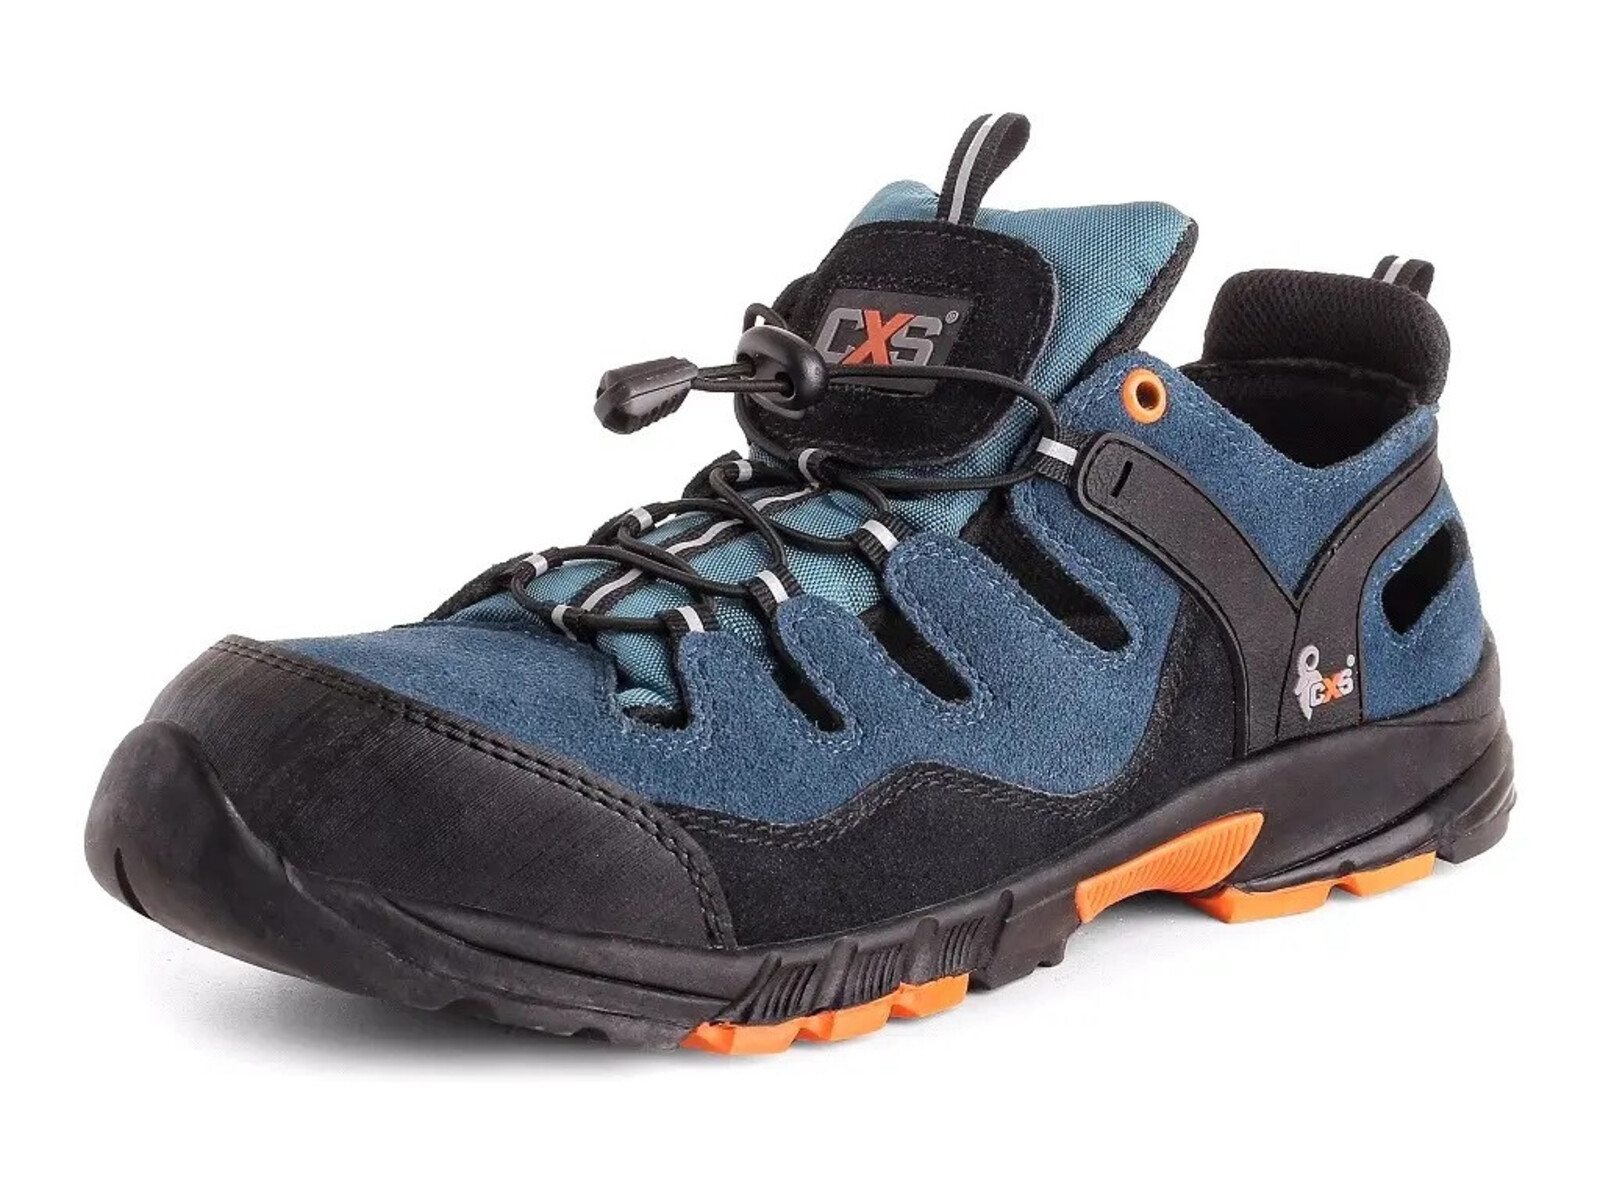 Bezpečnostné sandále CXS Land Cabrera S1 SRC - veľkosť: 36, farba: modrá/oranžová